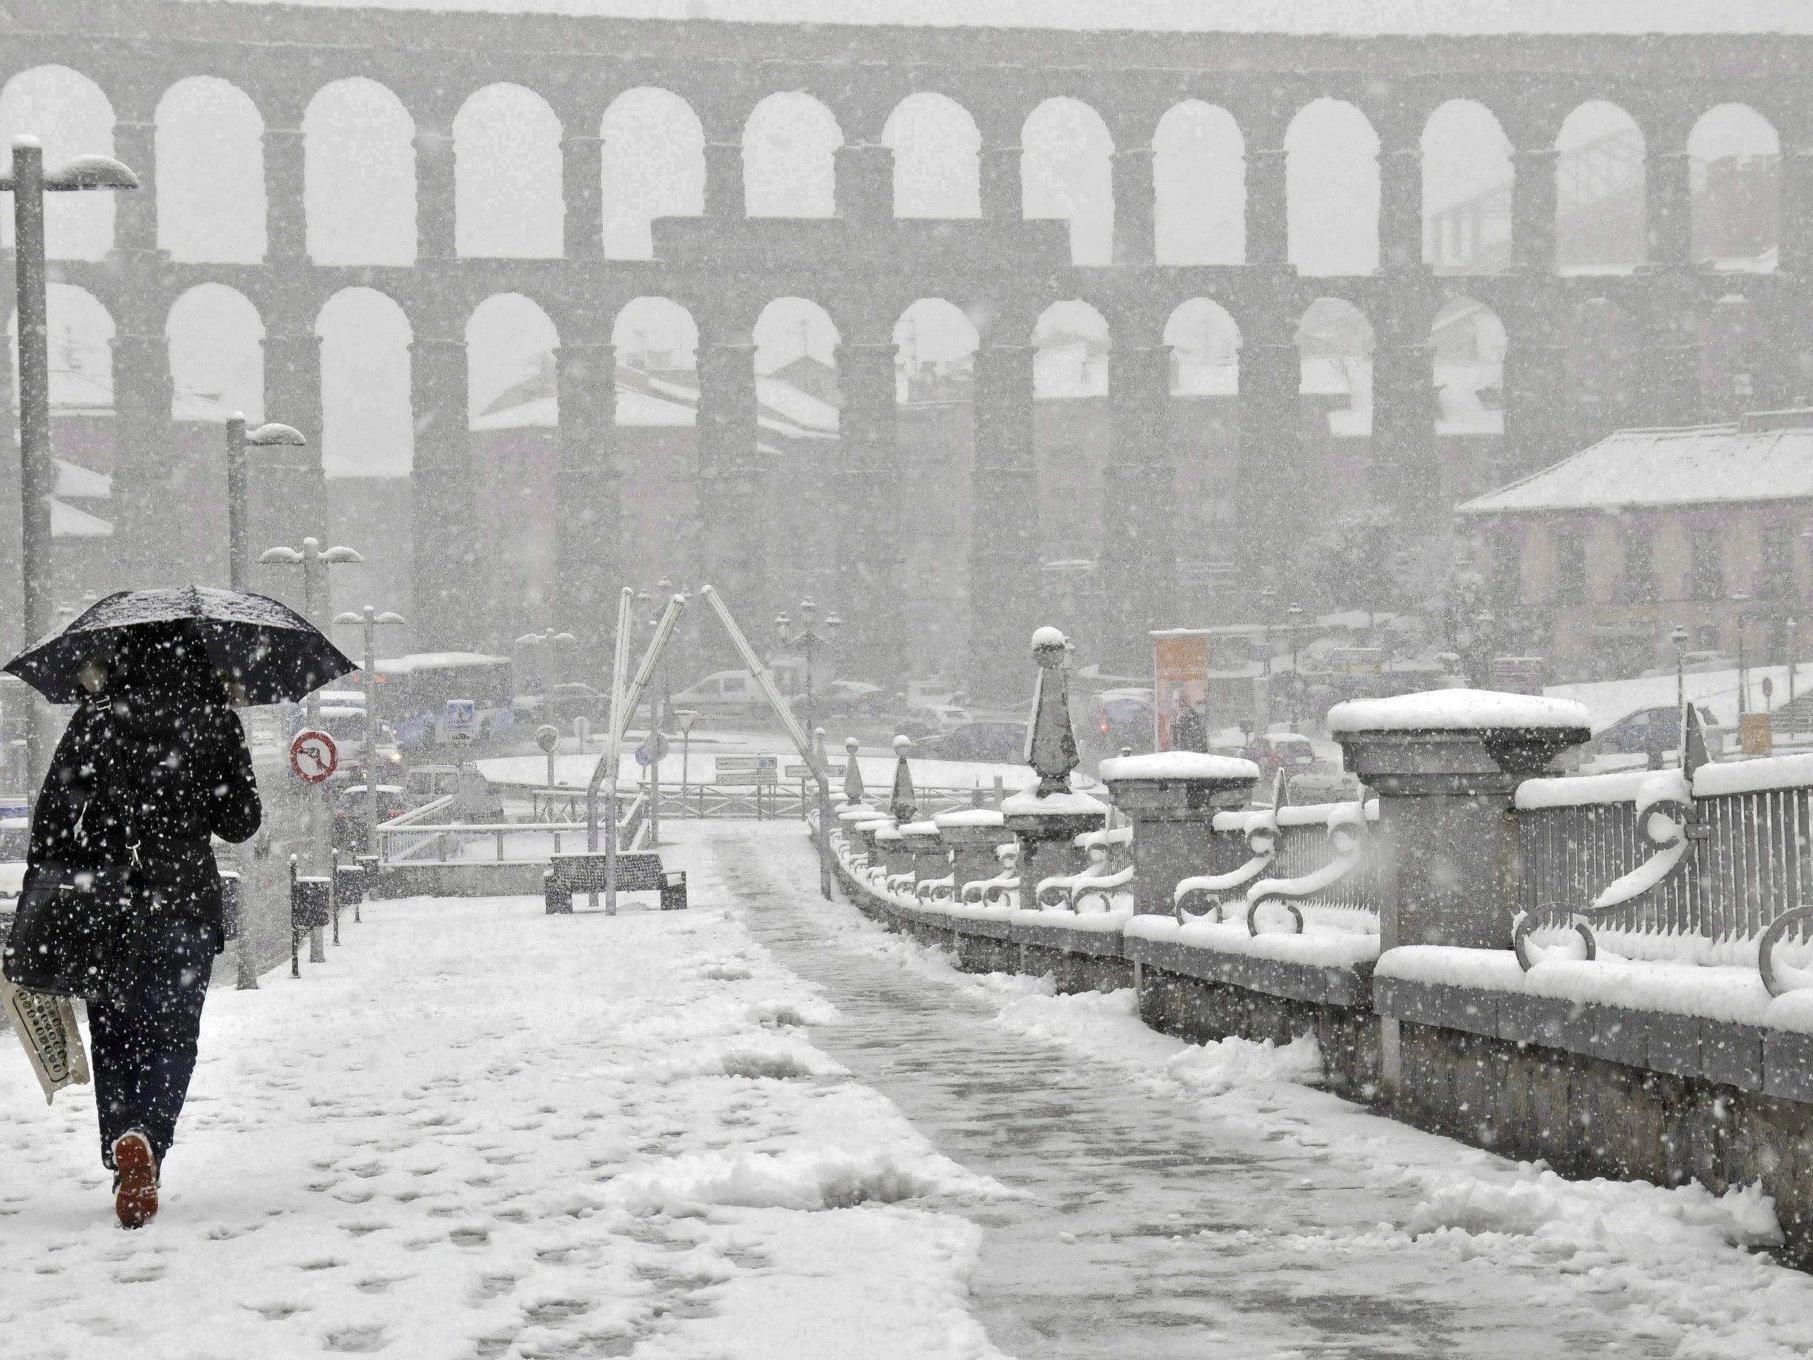 Während der Großteil Europas sonniges Frühlingswetter genießt, fiel in mehreren Provinzen Spaniens Schnee.